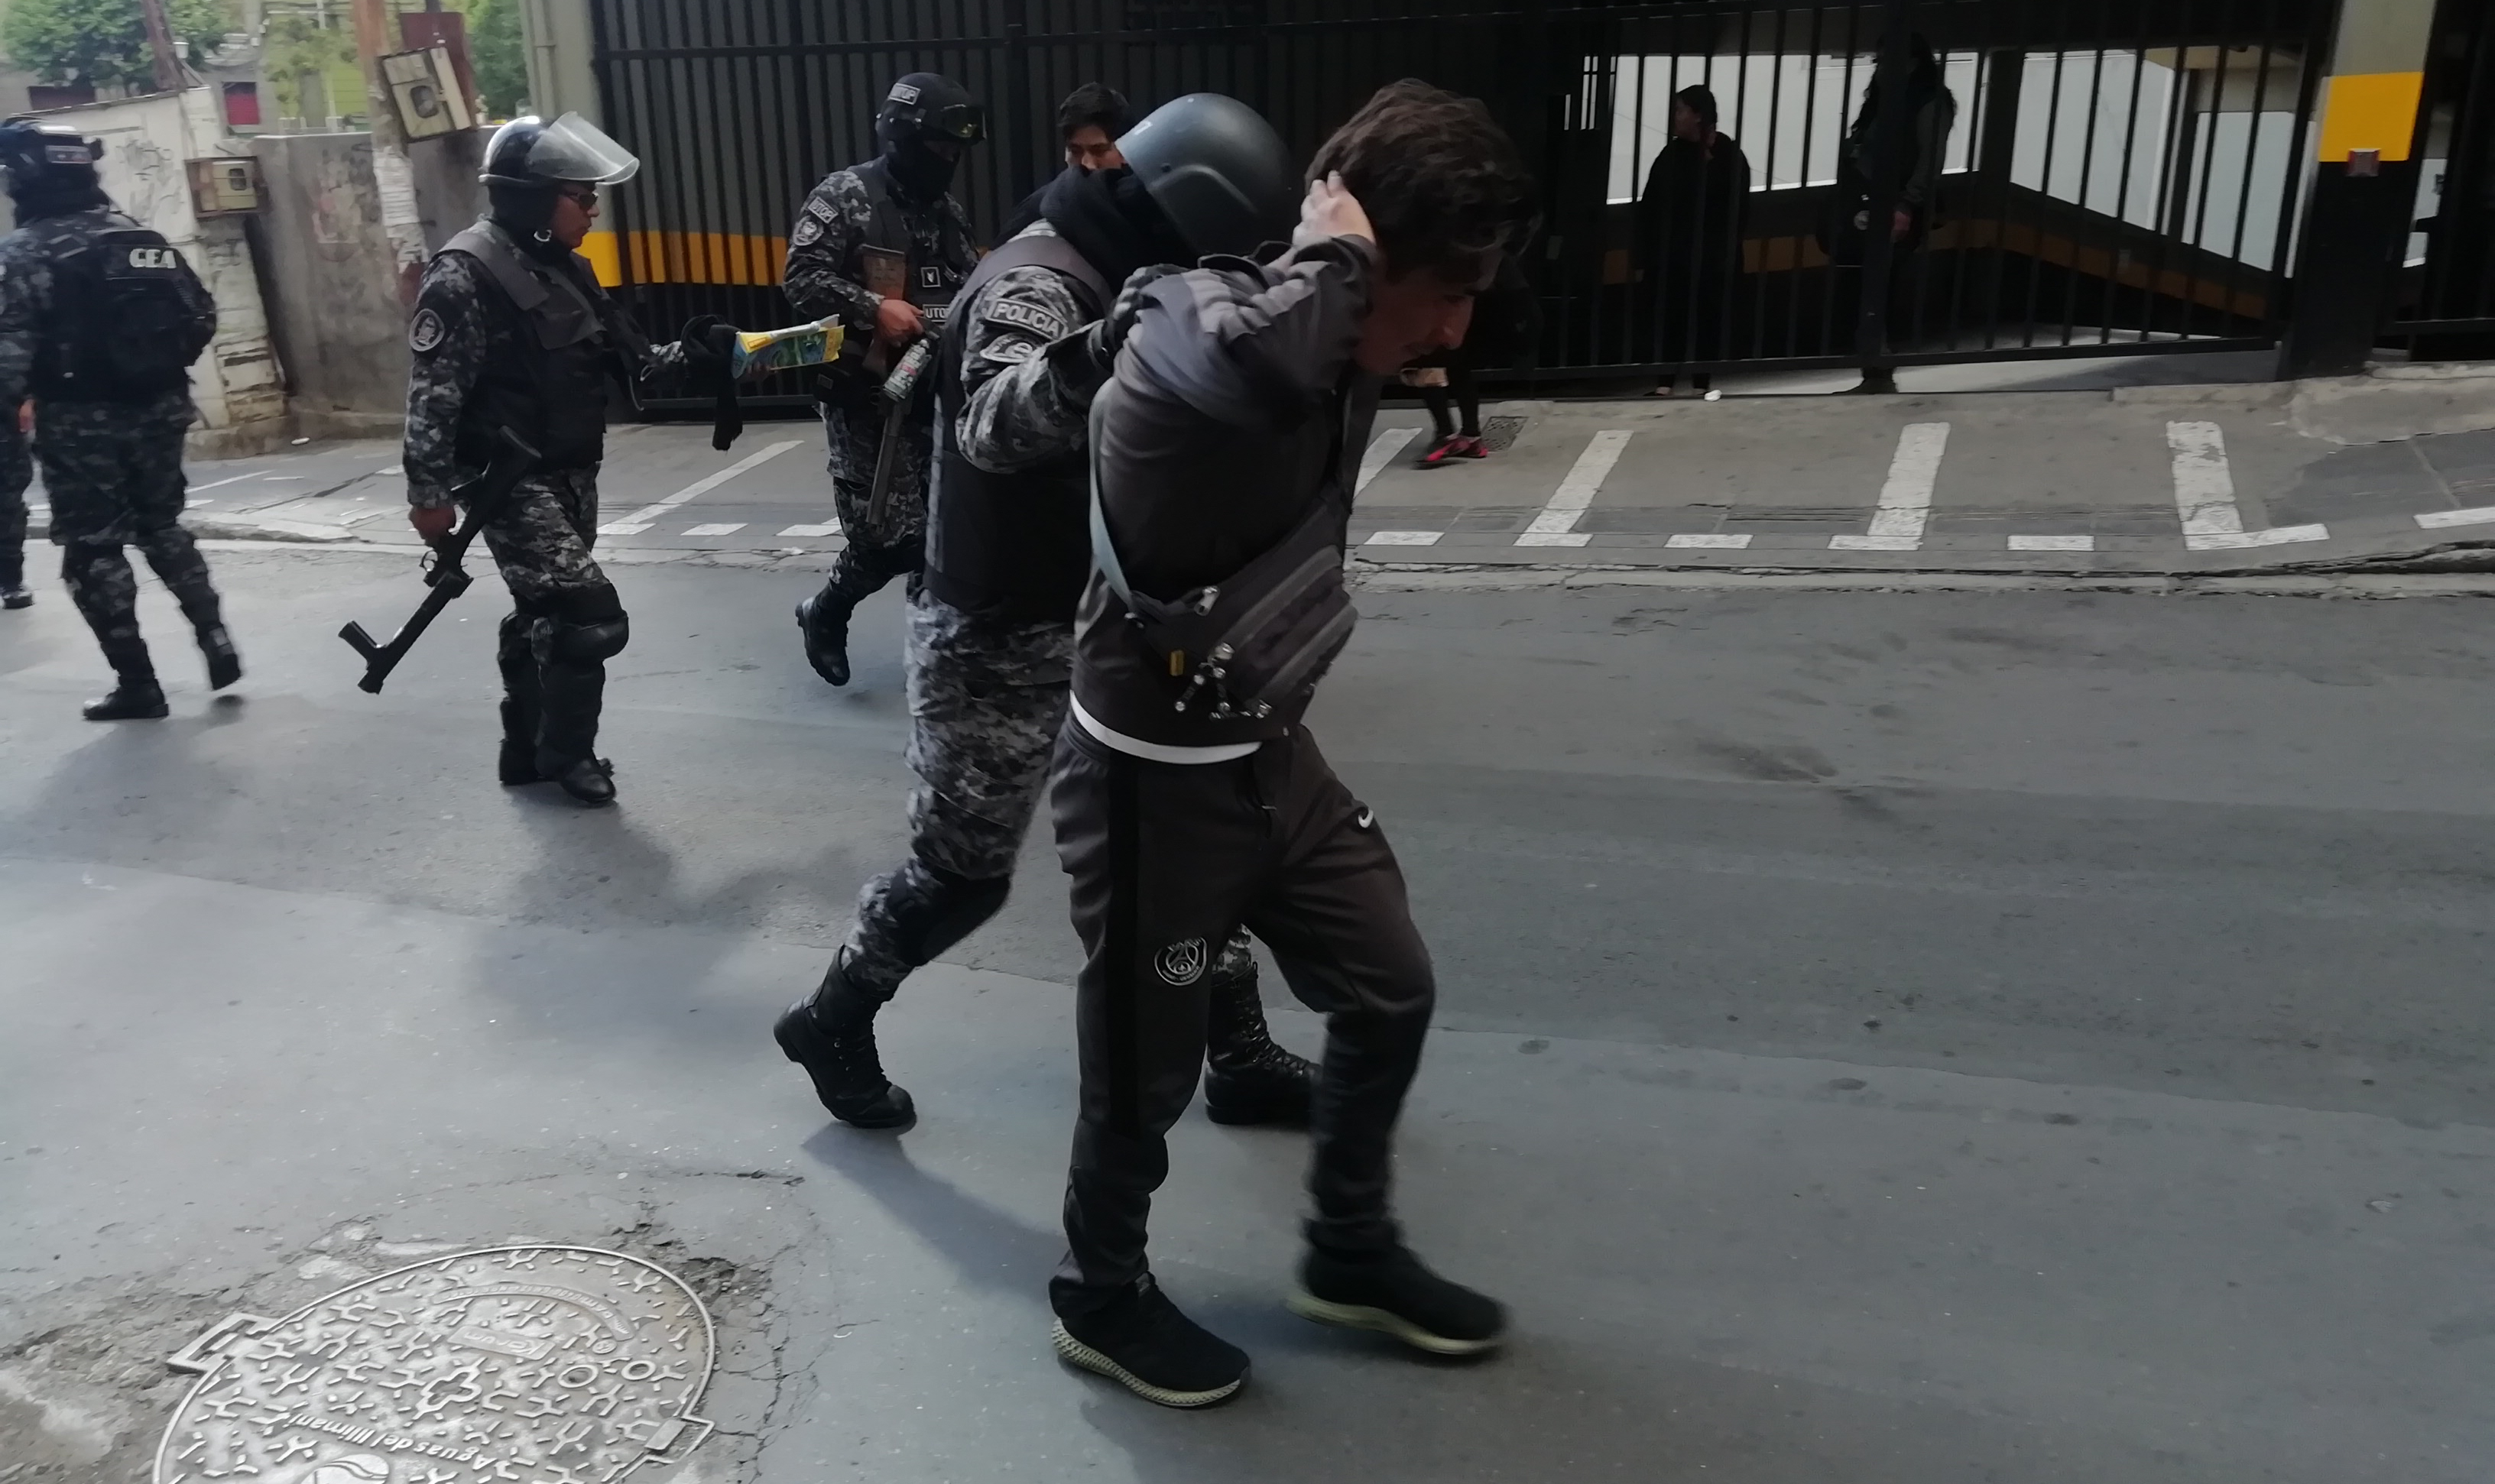 Procuradoria Geral da Bolívia confirmou que oito pessoas morreram na terça-feira (19/11), durante uma operação policial-militar em uma fábrica de combustíveis na cidade de El Alto